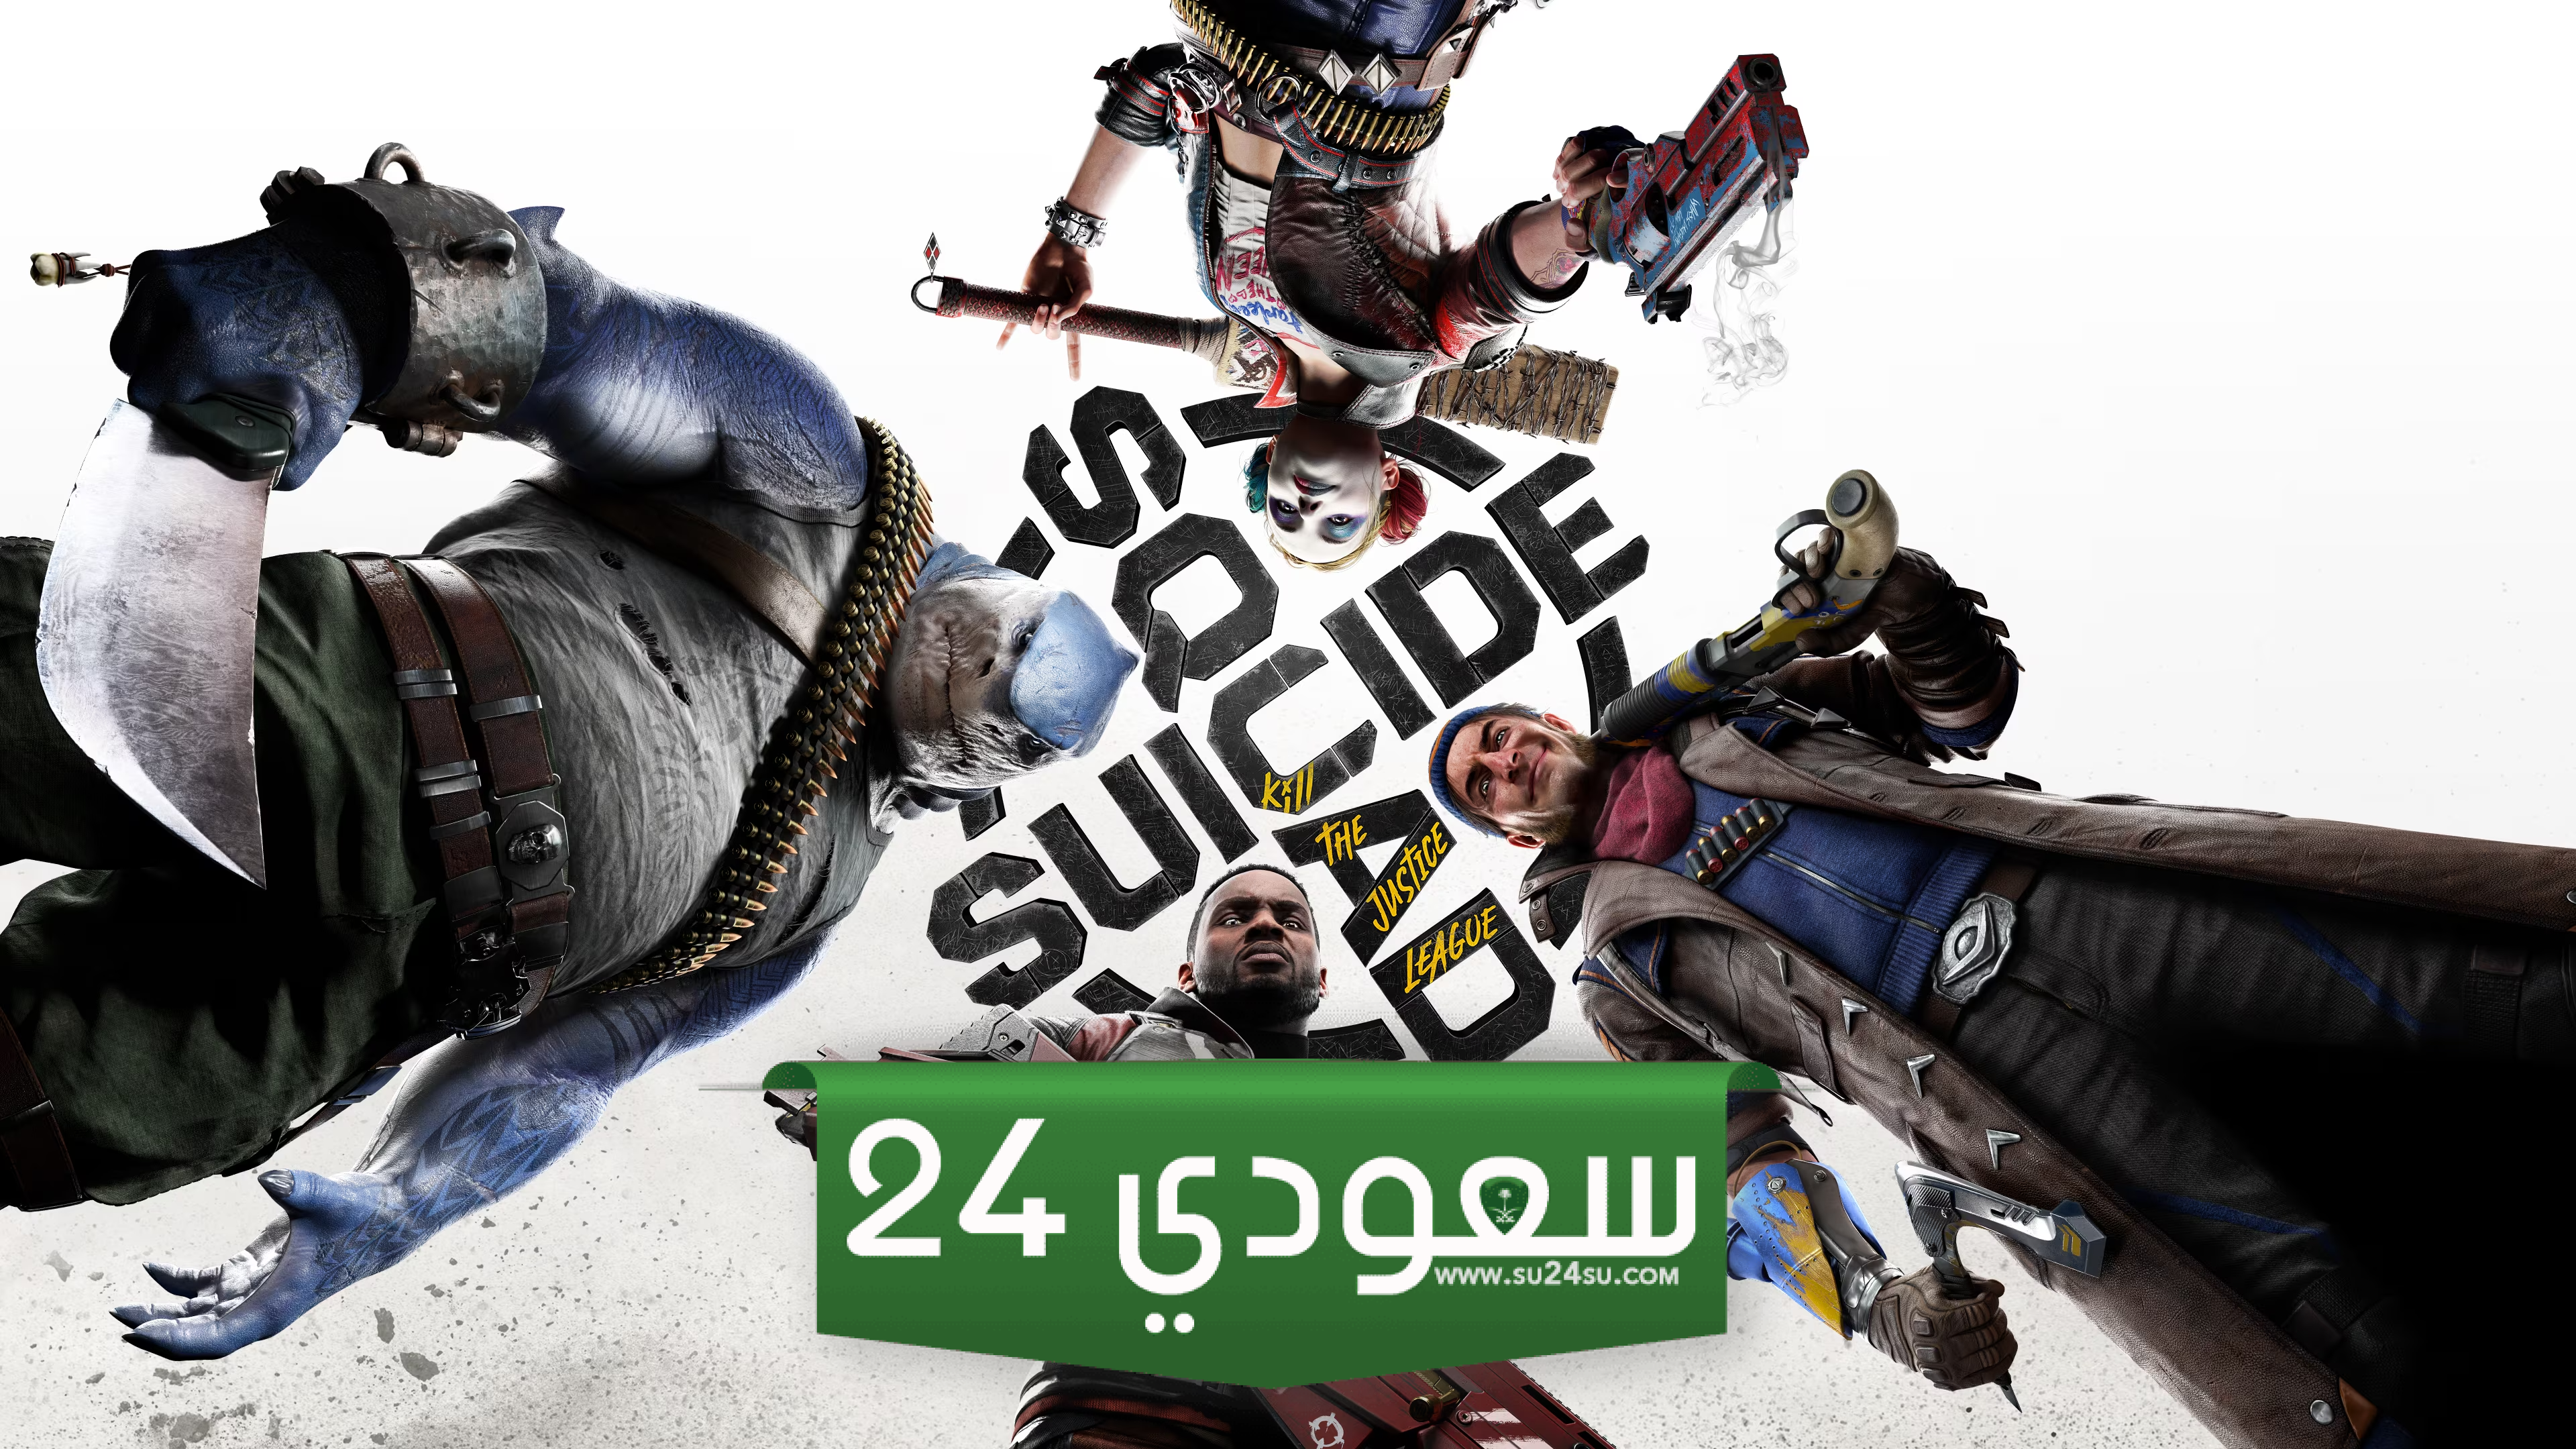 مطور Suicide Squad يعد اللاعبين أن اللعبة ستحترم وقتهم